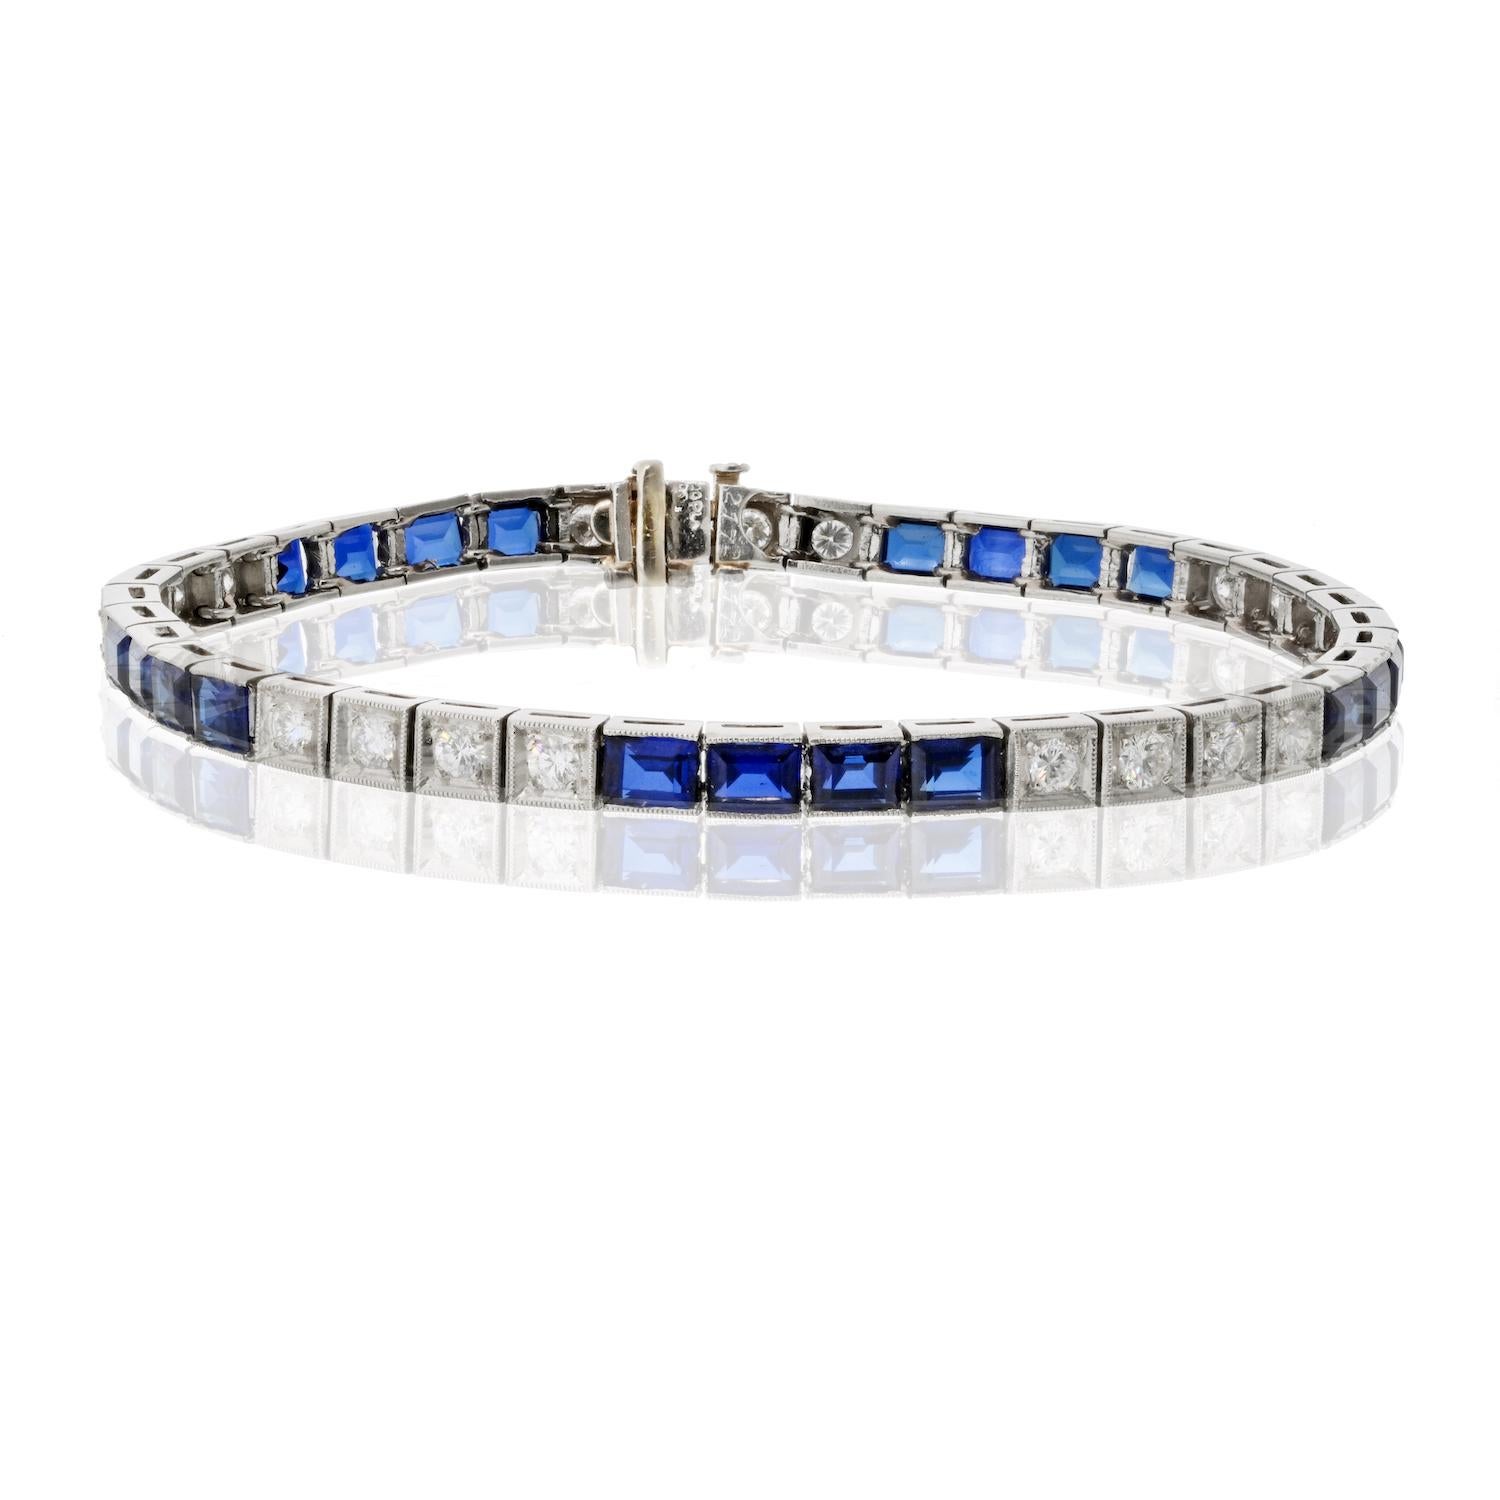 Das Oscar Heyman Platinarmband mit Saphiren und Diamanten strahlt zeitlose Eleganz und Raffinesse aus und ist ein wahres Wunderwerk an Handwerkskunst und Luxus. 

Dieses exquisite Armband aus glänzendem Platin ist mit einer Reihe von Saphiren und